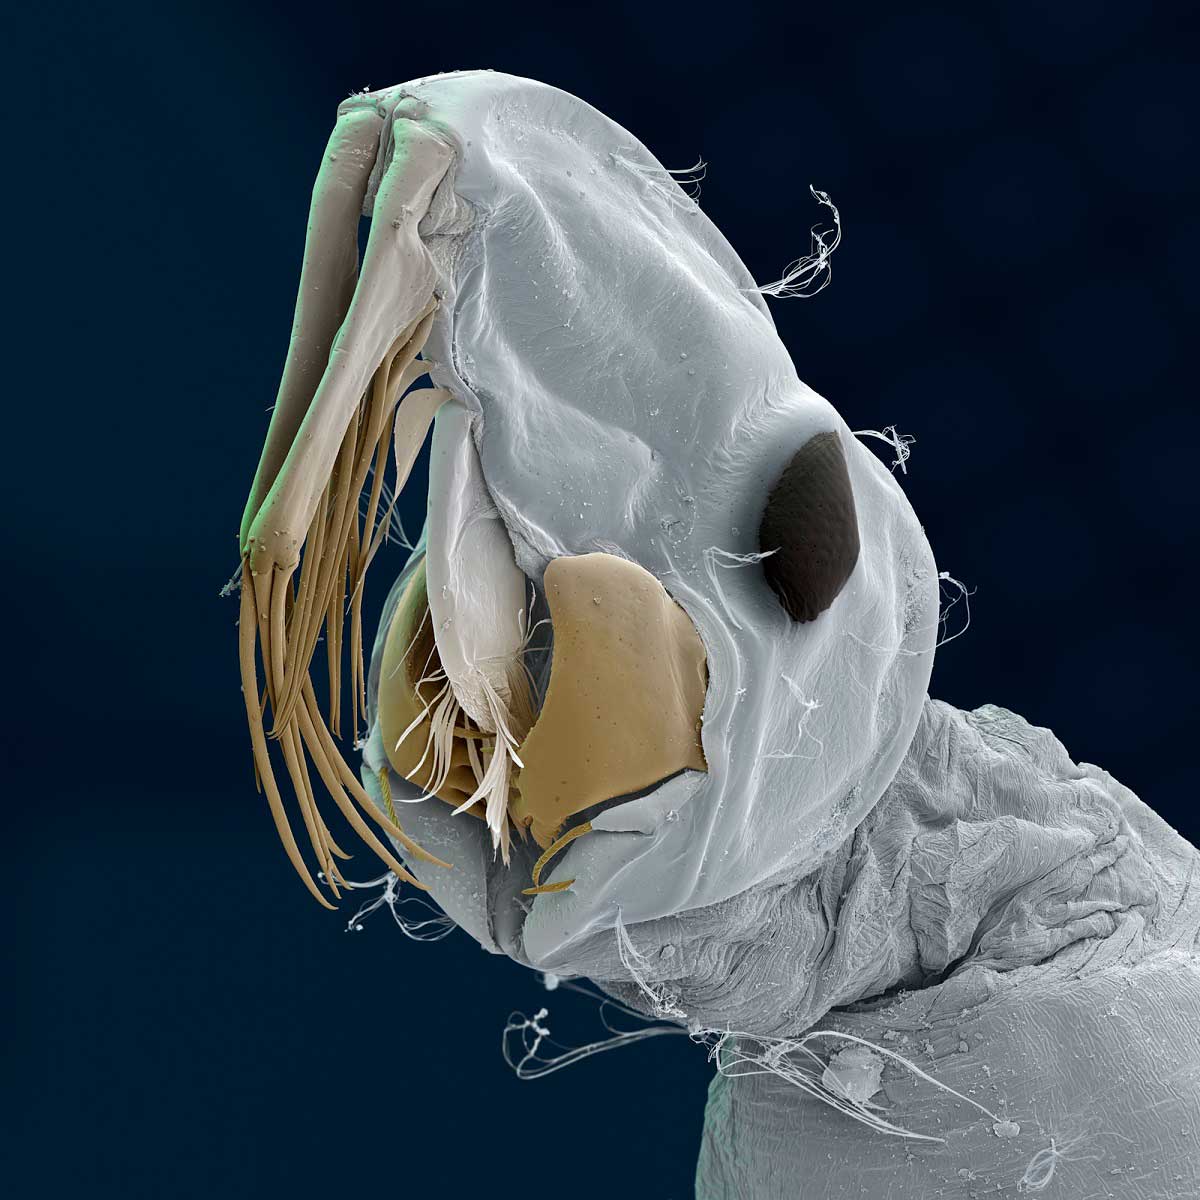 Взгляд на существ через микроскоп или фантастические макрофотографии